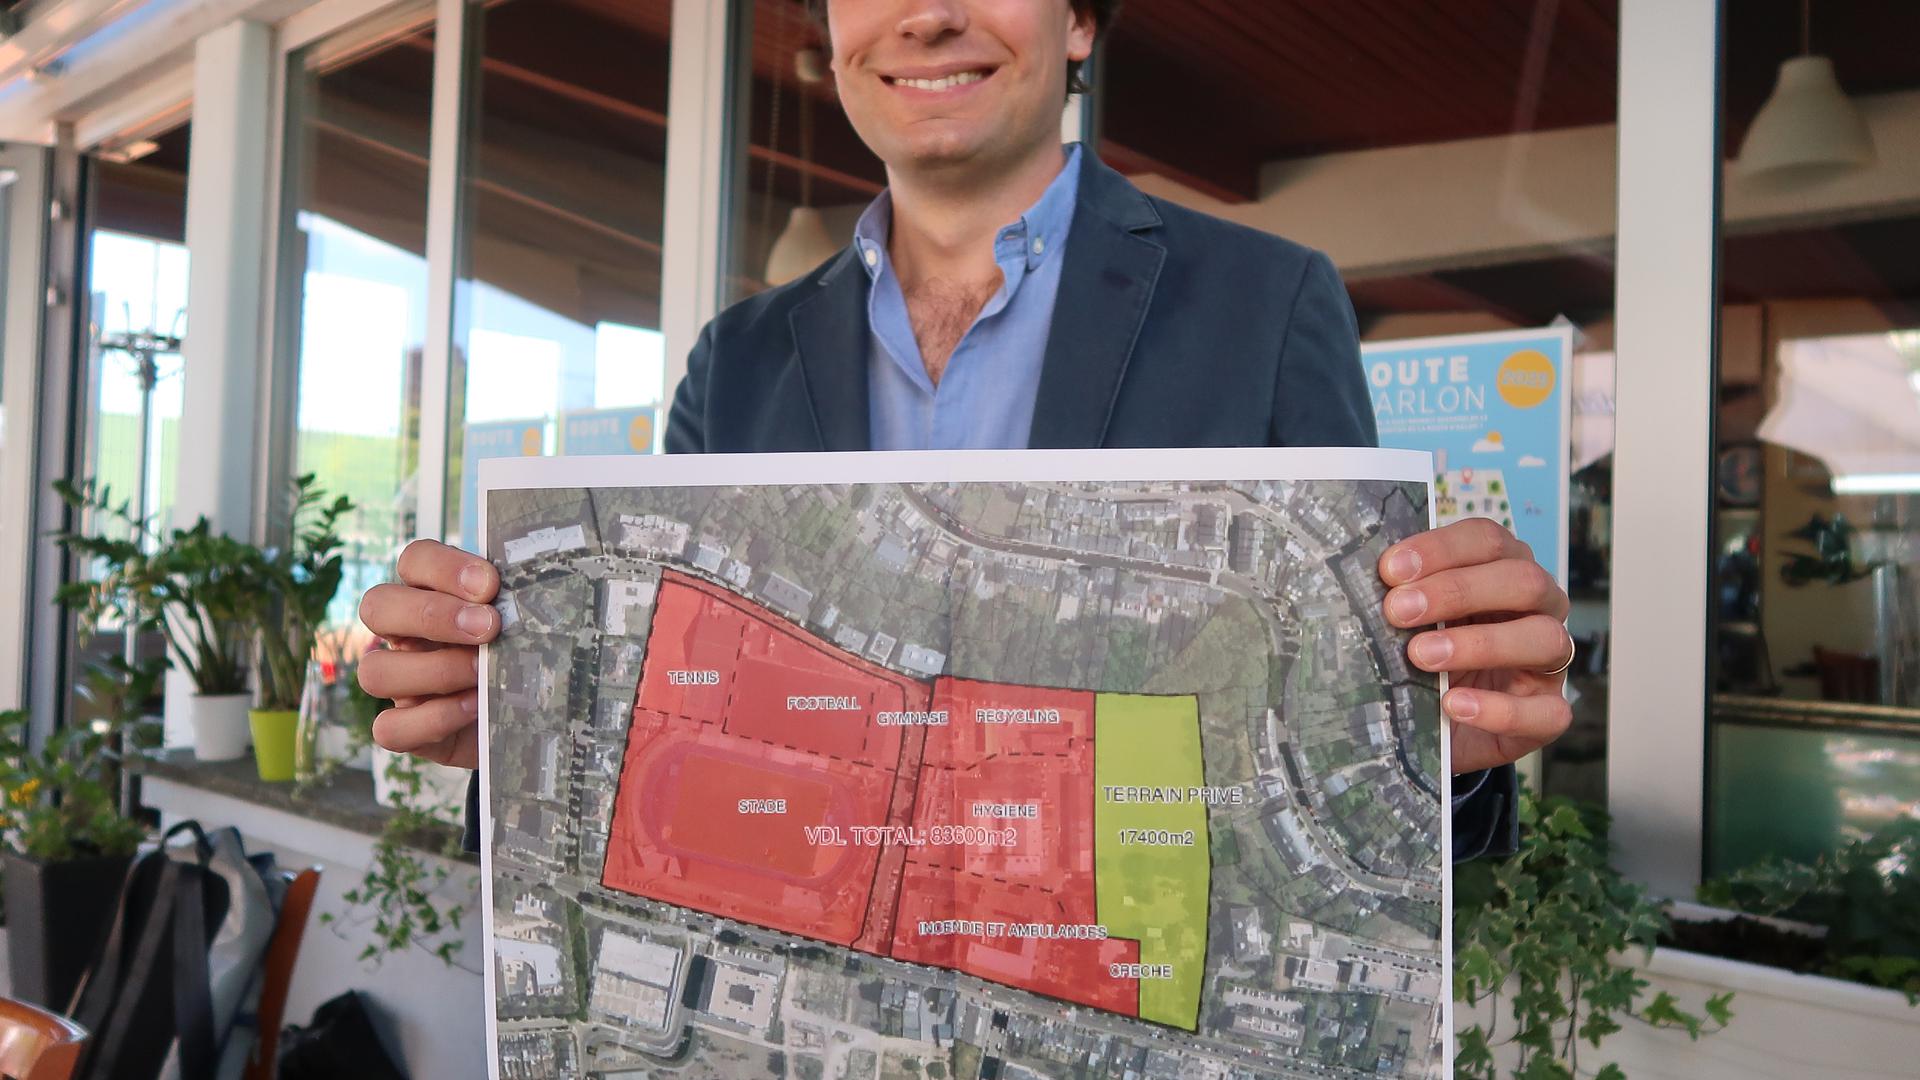 83% de la surface du futur quartier (en rouge sur la carte) est la propriété de la Ville de Luxembourg. La ligne droite à la base du rectangle représente la route d'Arlon.
